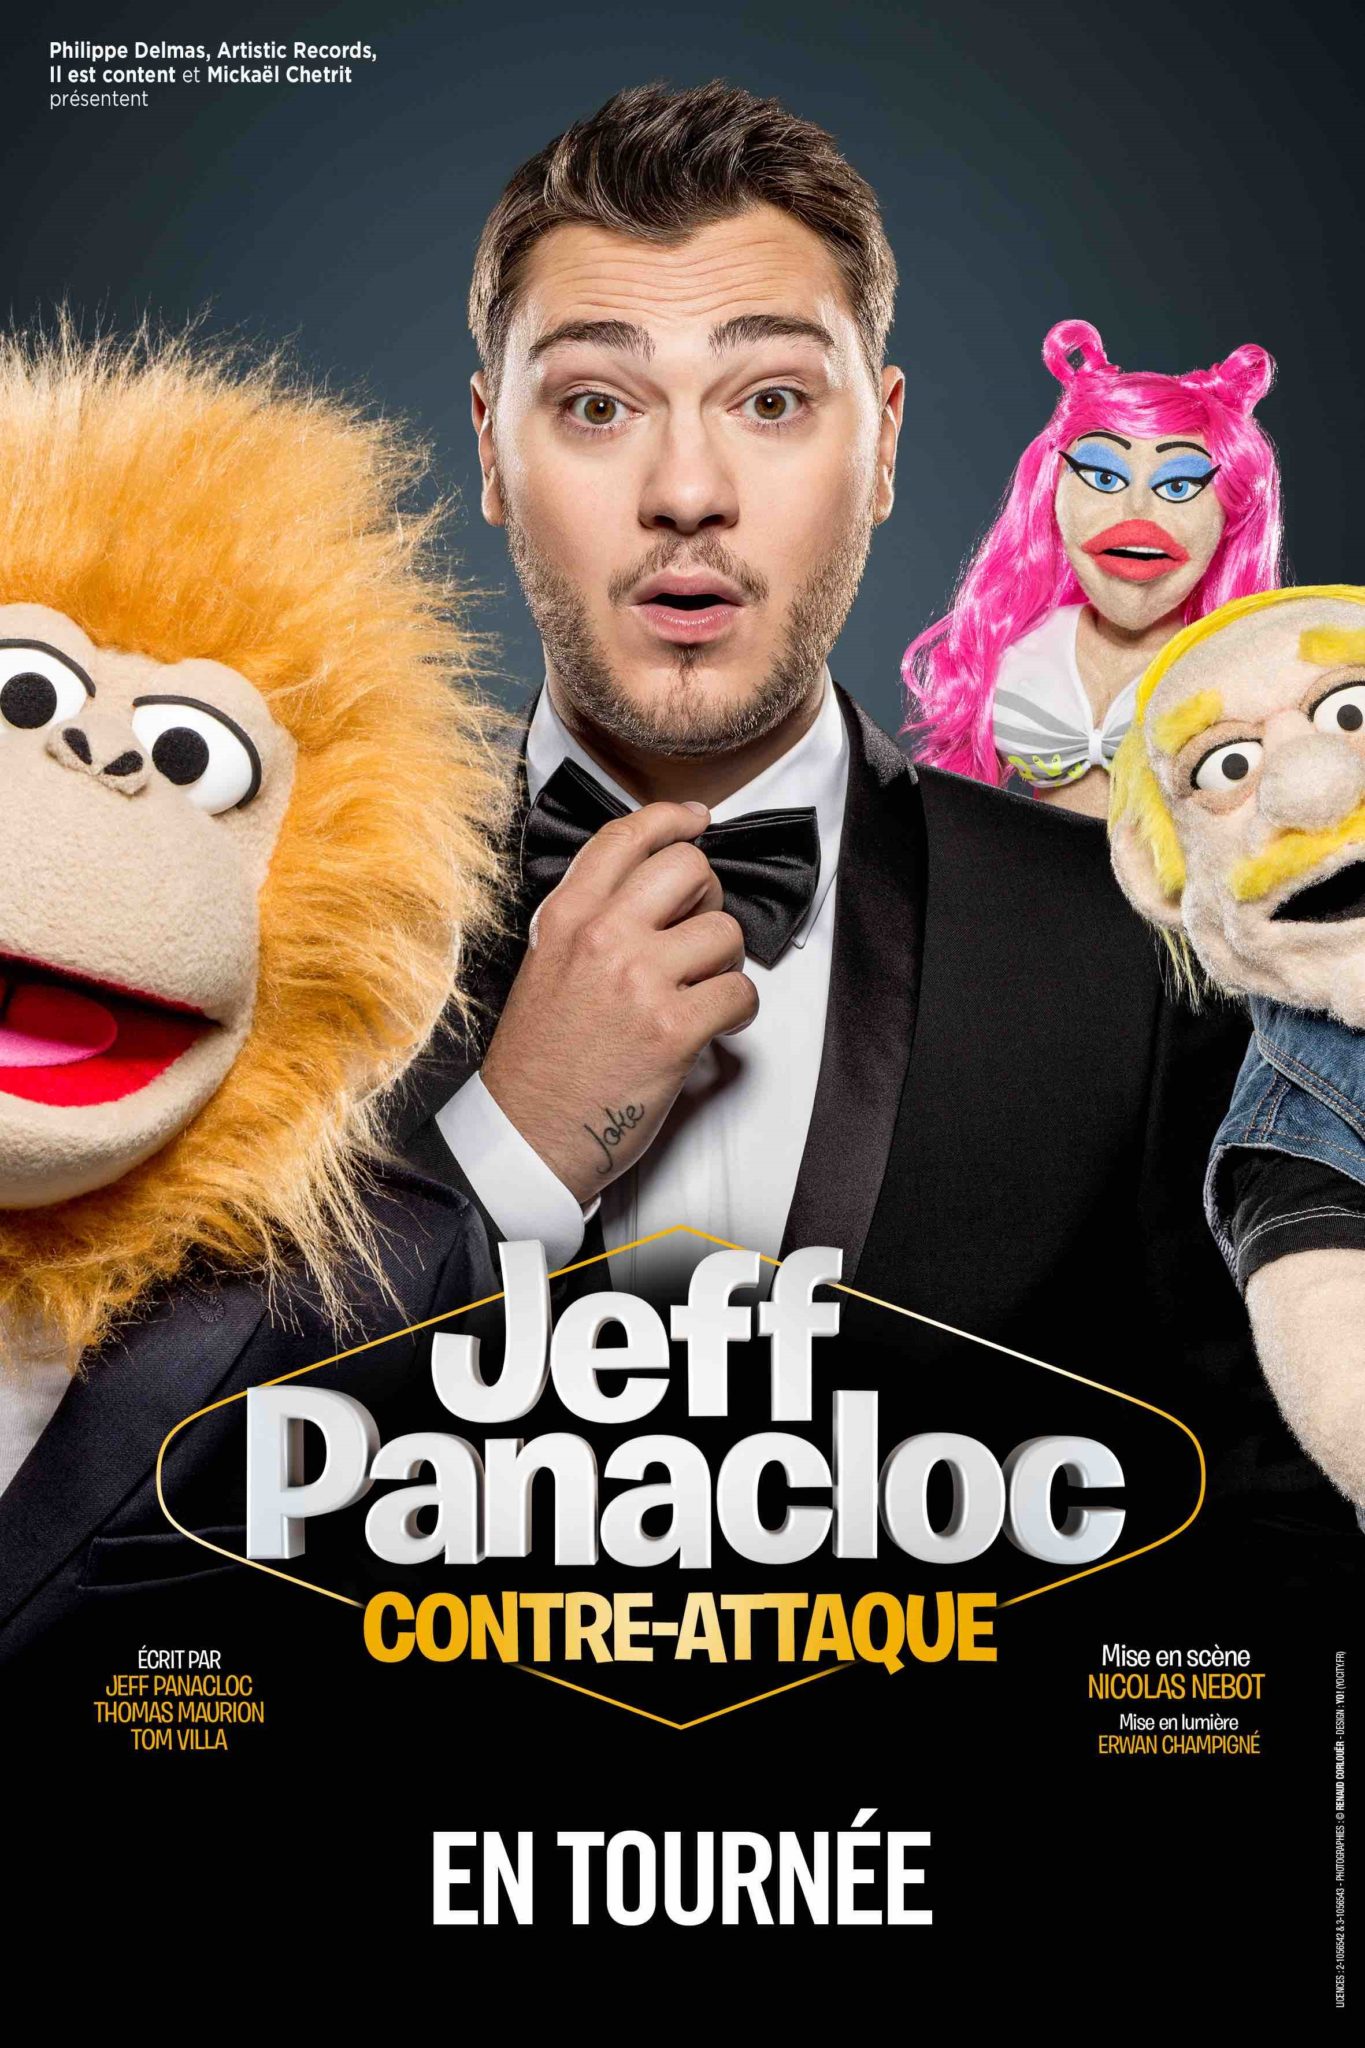 Jeff Panacloc dans un cinéma près d'Angers ce dimanche – Angers Info